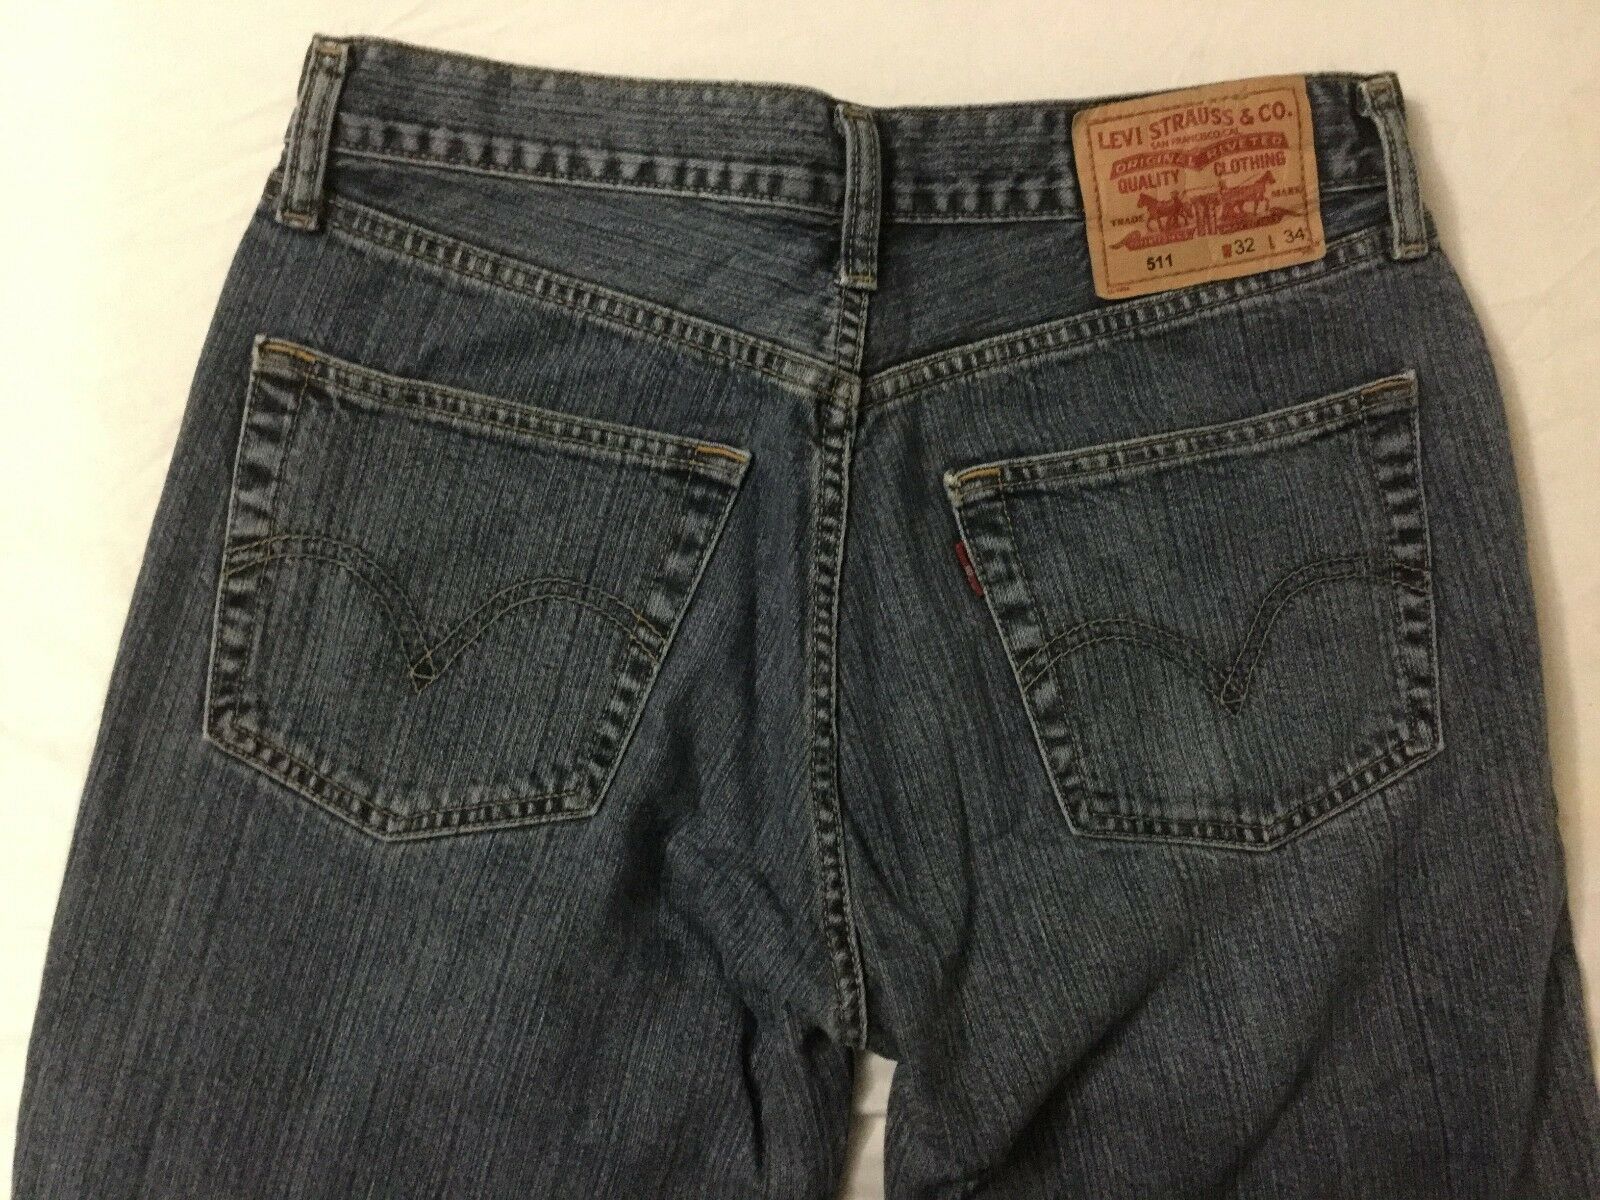 Levi 511 Jeans Mens size 32x34  - $29.70